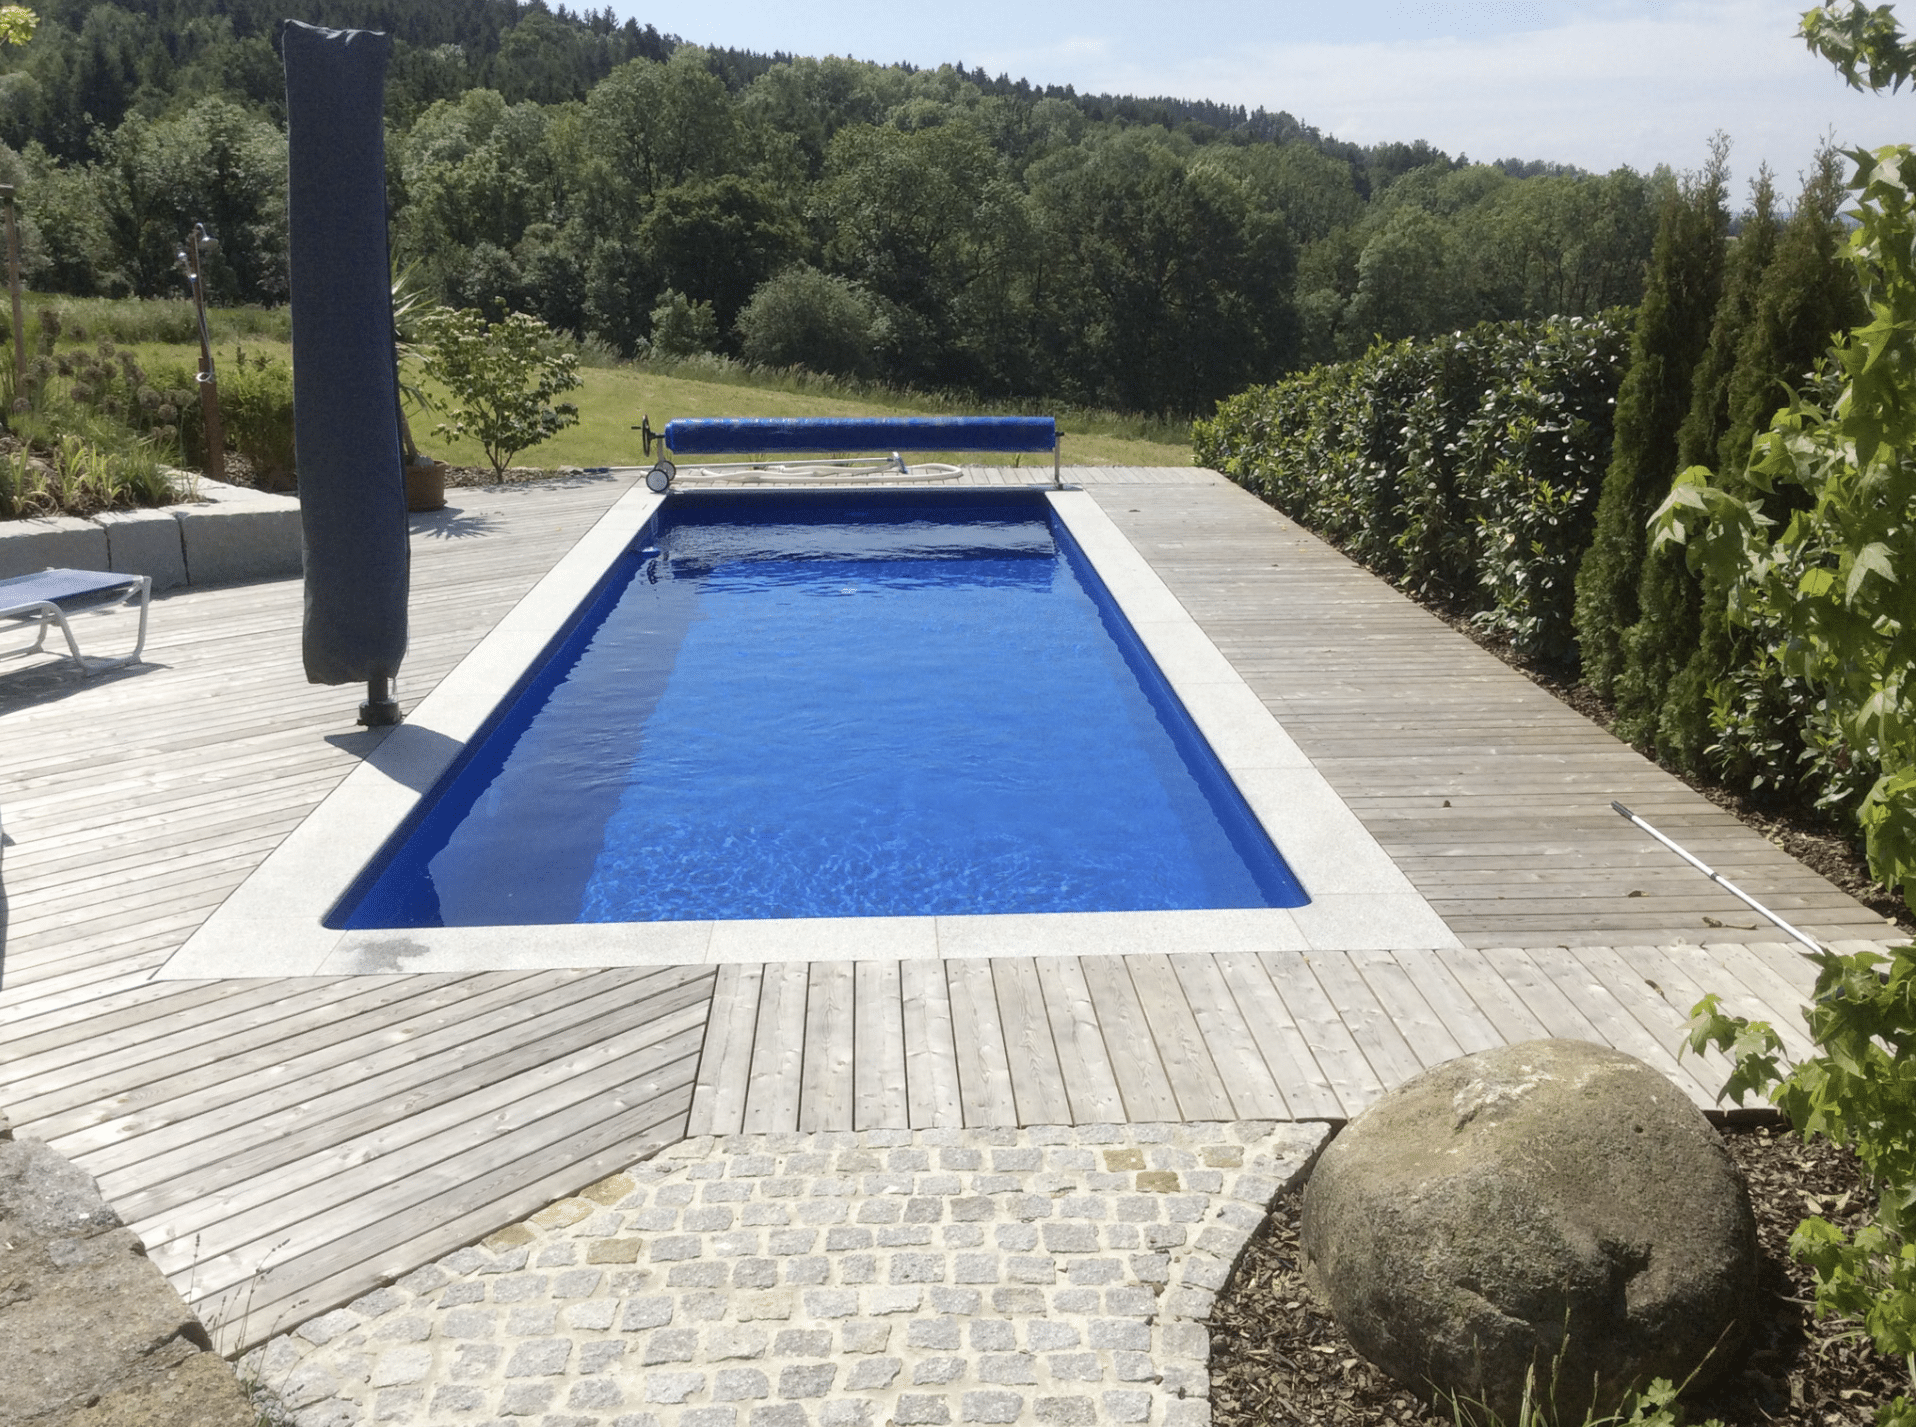 Gartenbau Schmid zeigt einen rechteckigen Pool mit Holzverbau rundeherum und verschiedene Hecken als Sichtschutz.